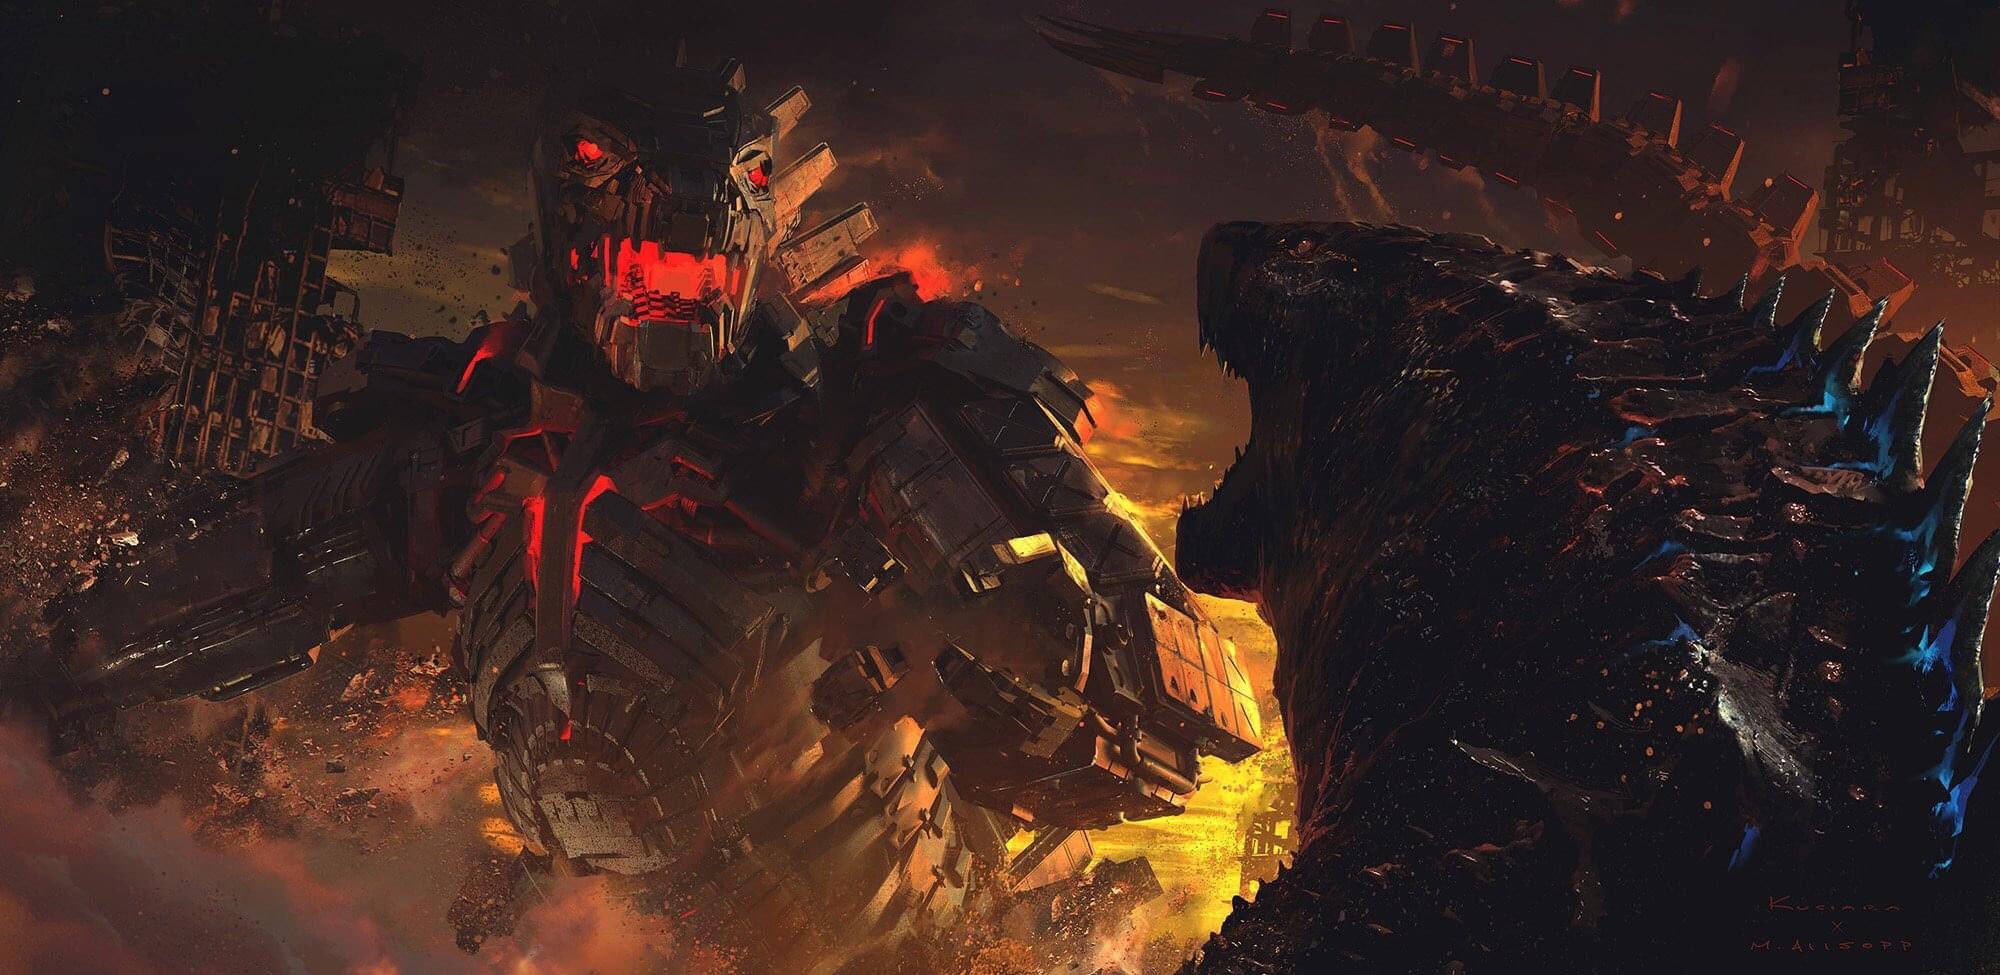 Godzilla vs. Mechagodzilla concept art by Matt Allsopp